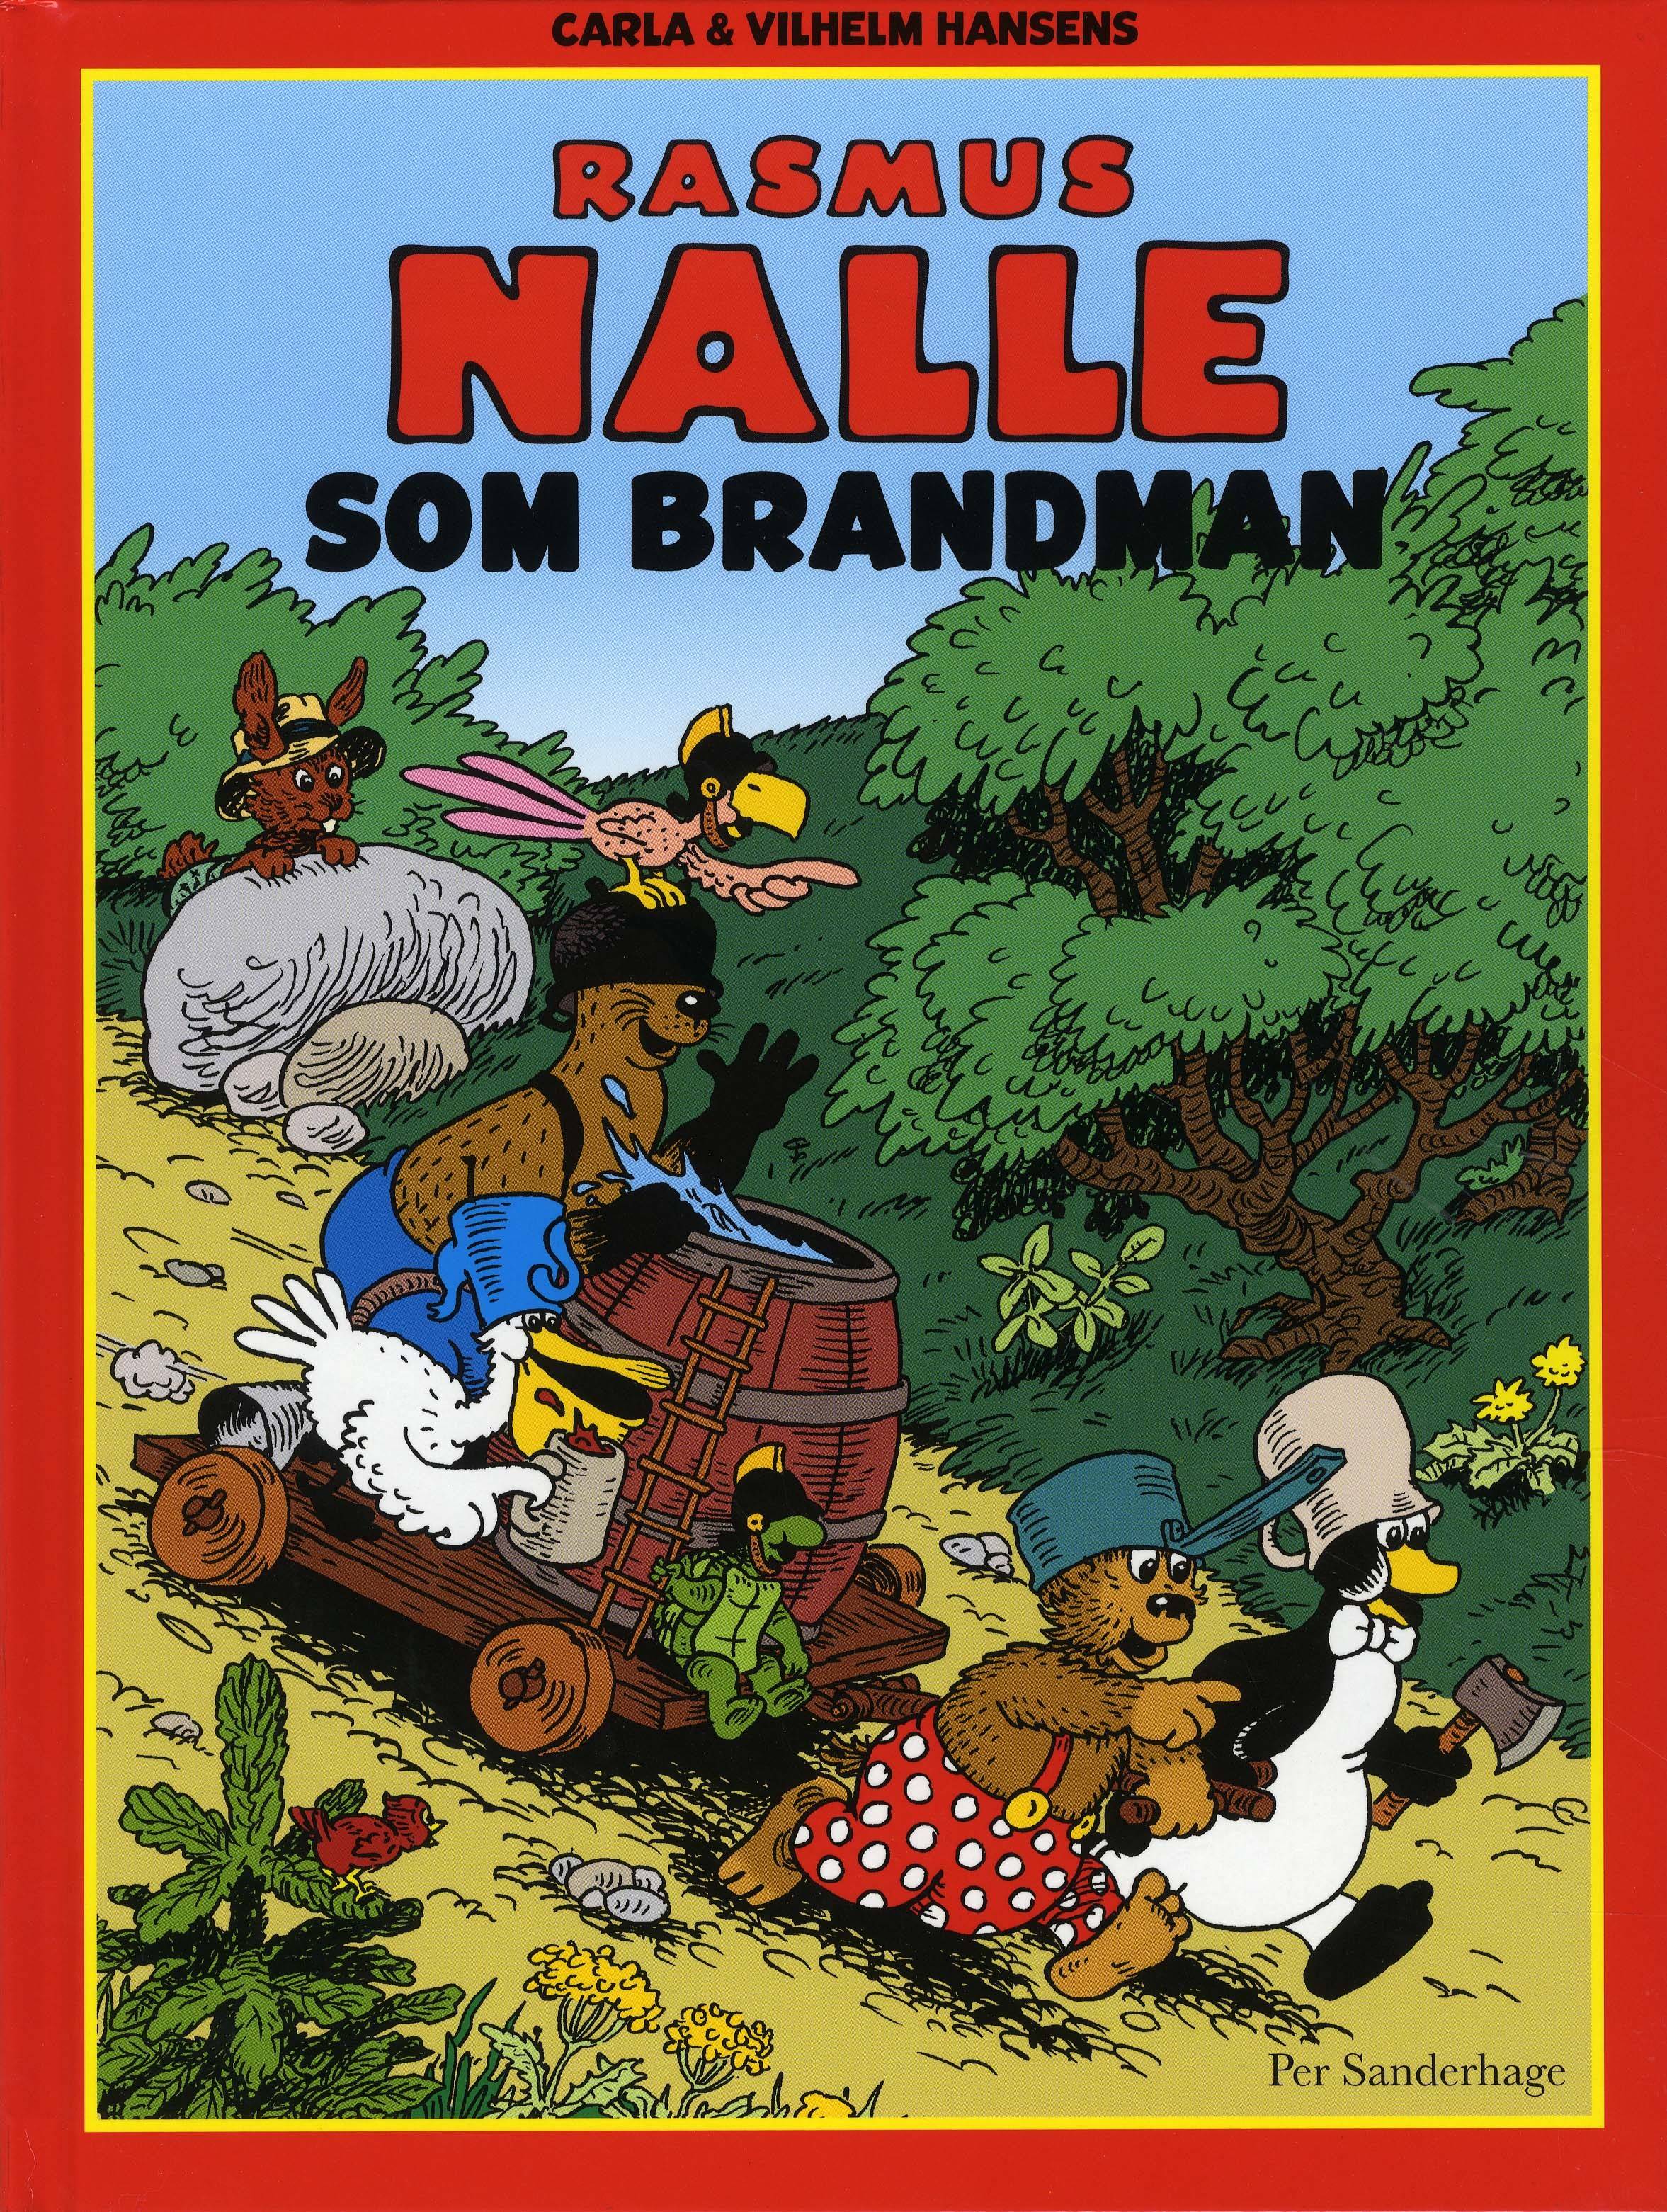 Rasmus Nalle som brandman